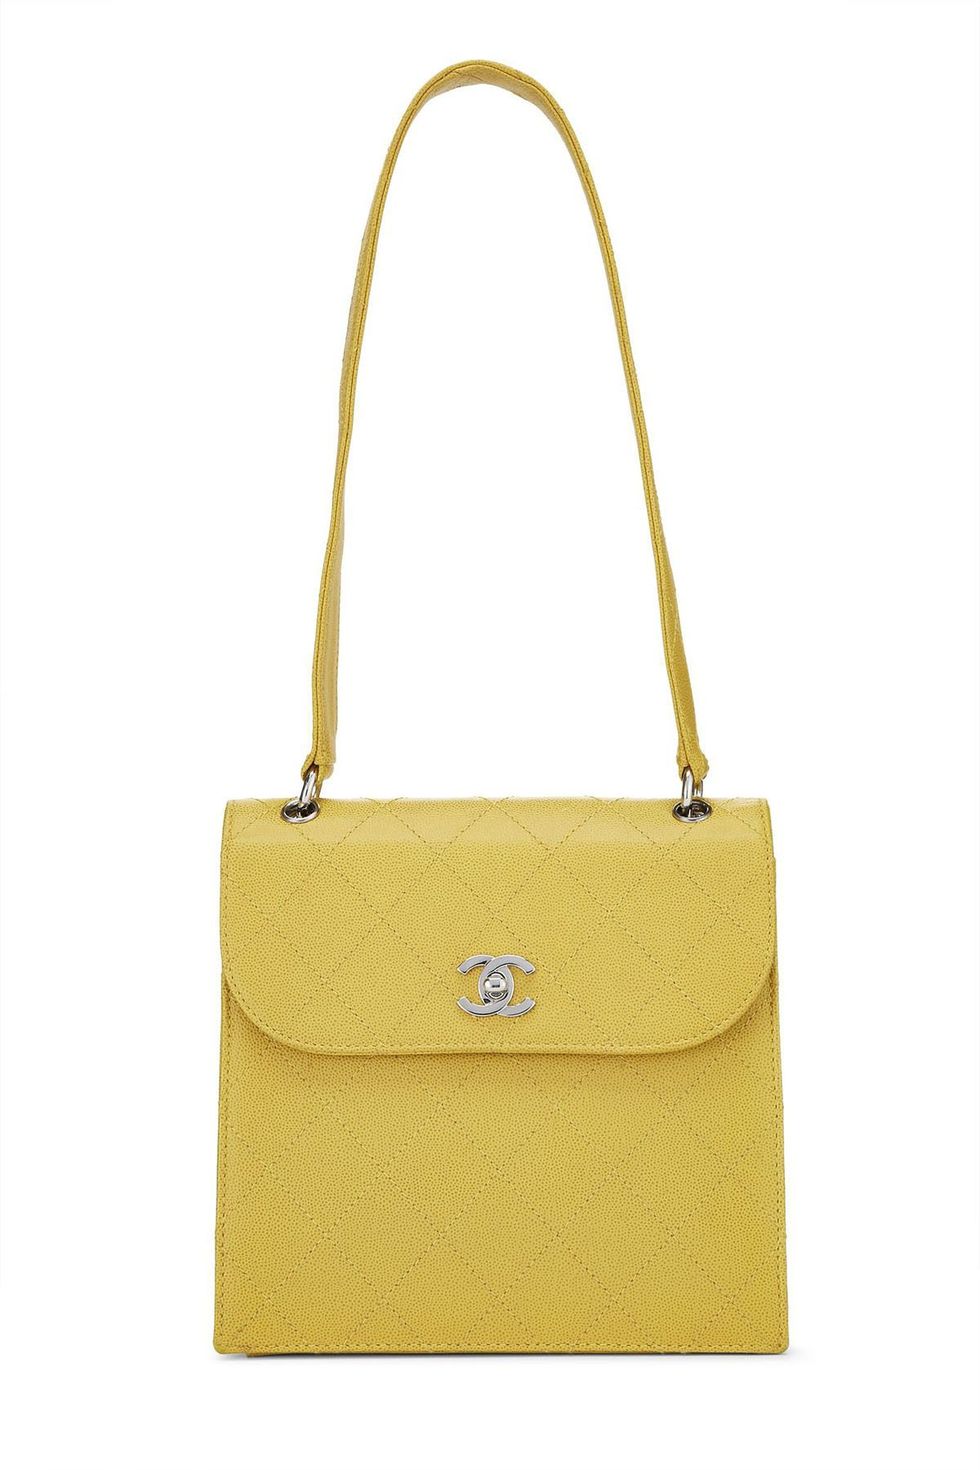 Chanel tote/shoulder bag – Raks Thrift Avenue